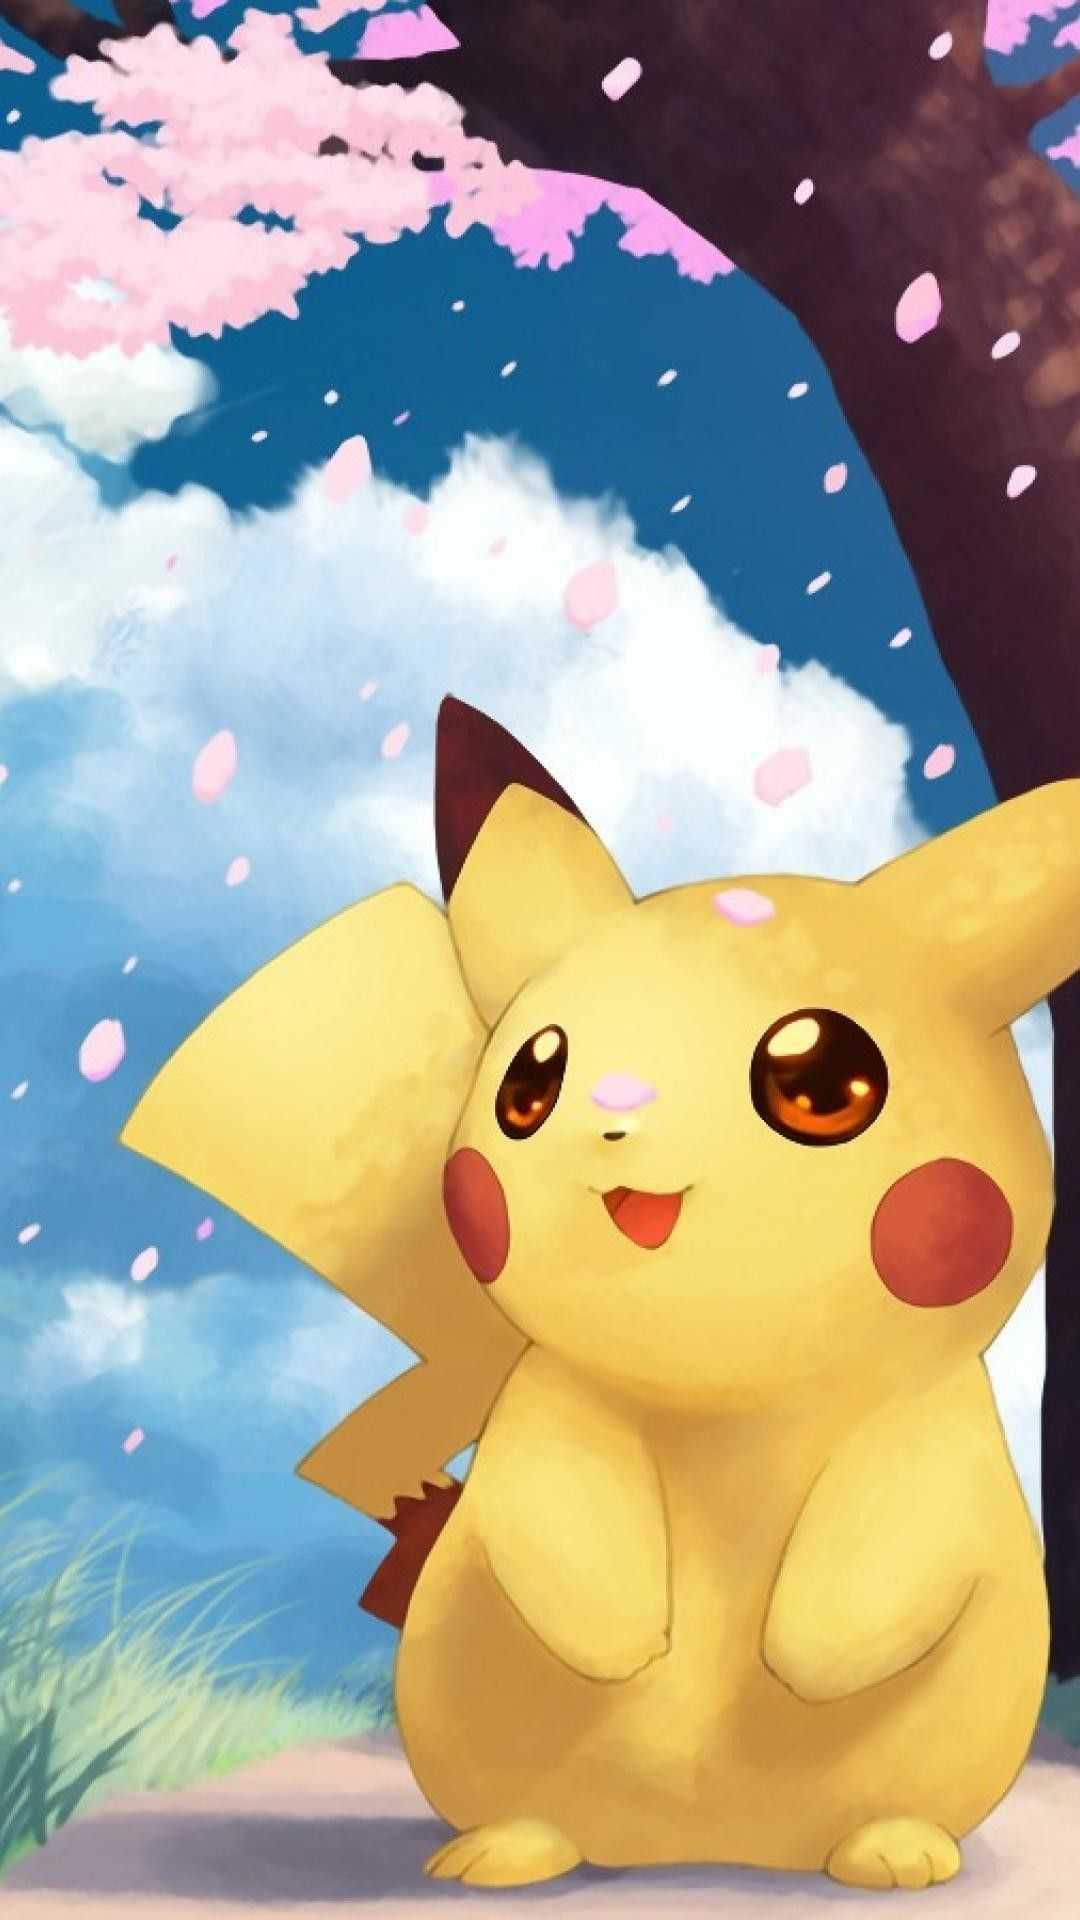 Pikachu Wallpaper - VoBss